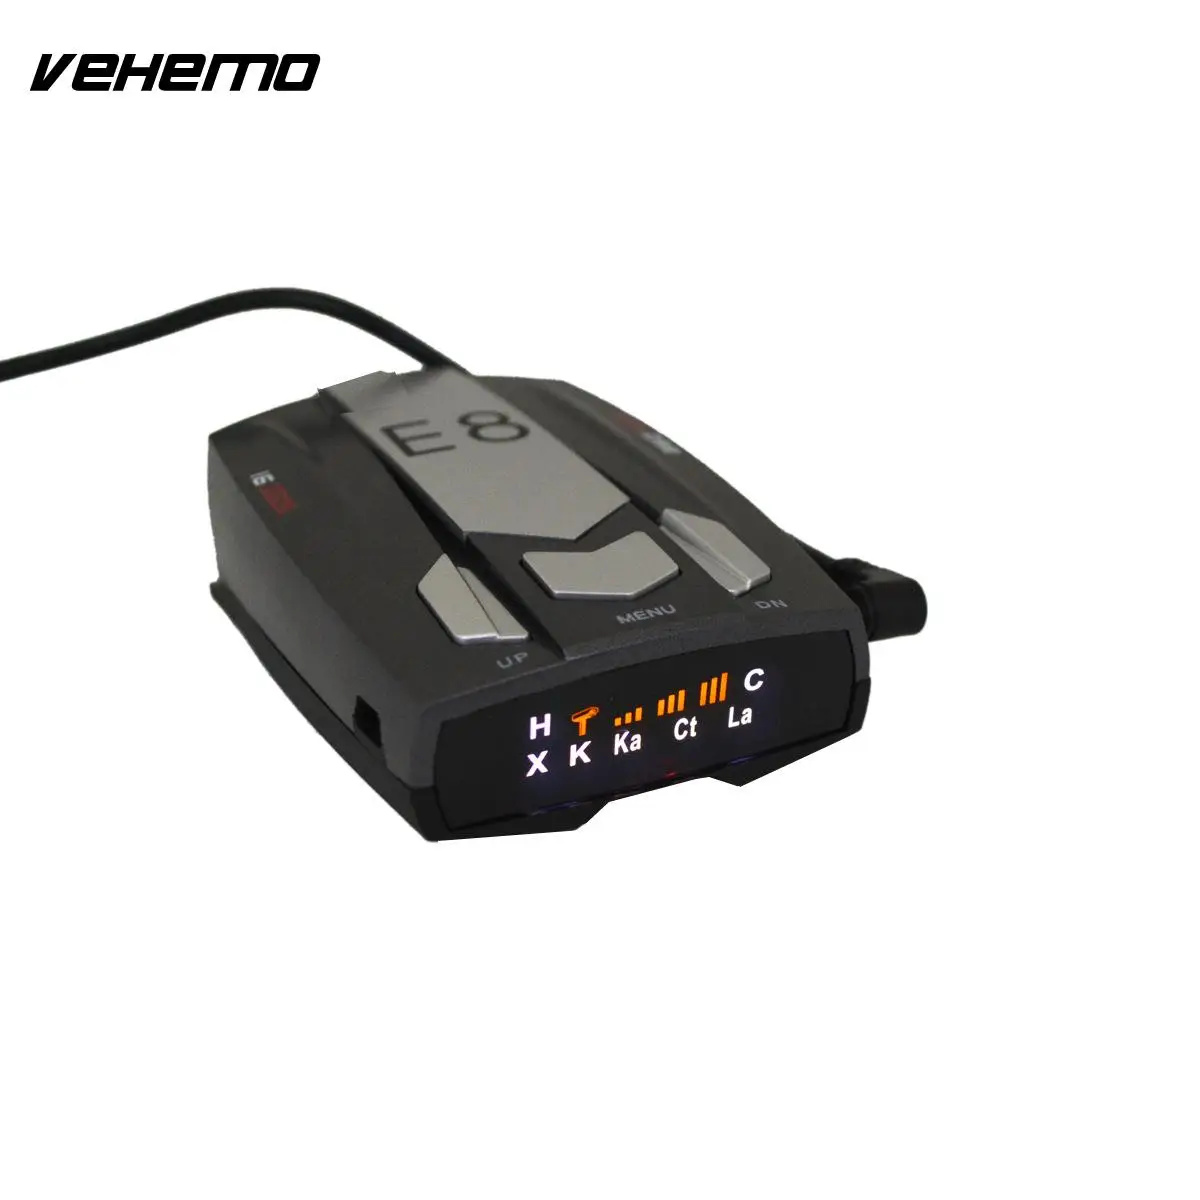 Vehemo E8 автомобильный радар Полнодиапазонный сканирующий трекер универсальный детектор контроля скорости касание ключа голосового оповещение, предупреждение